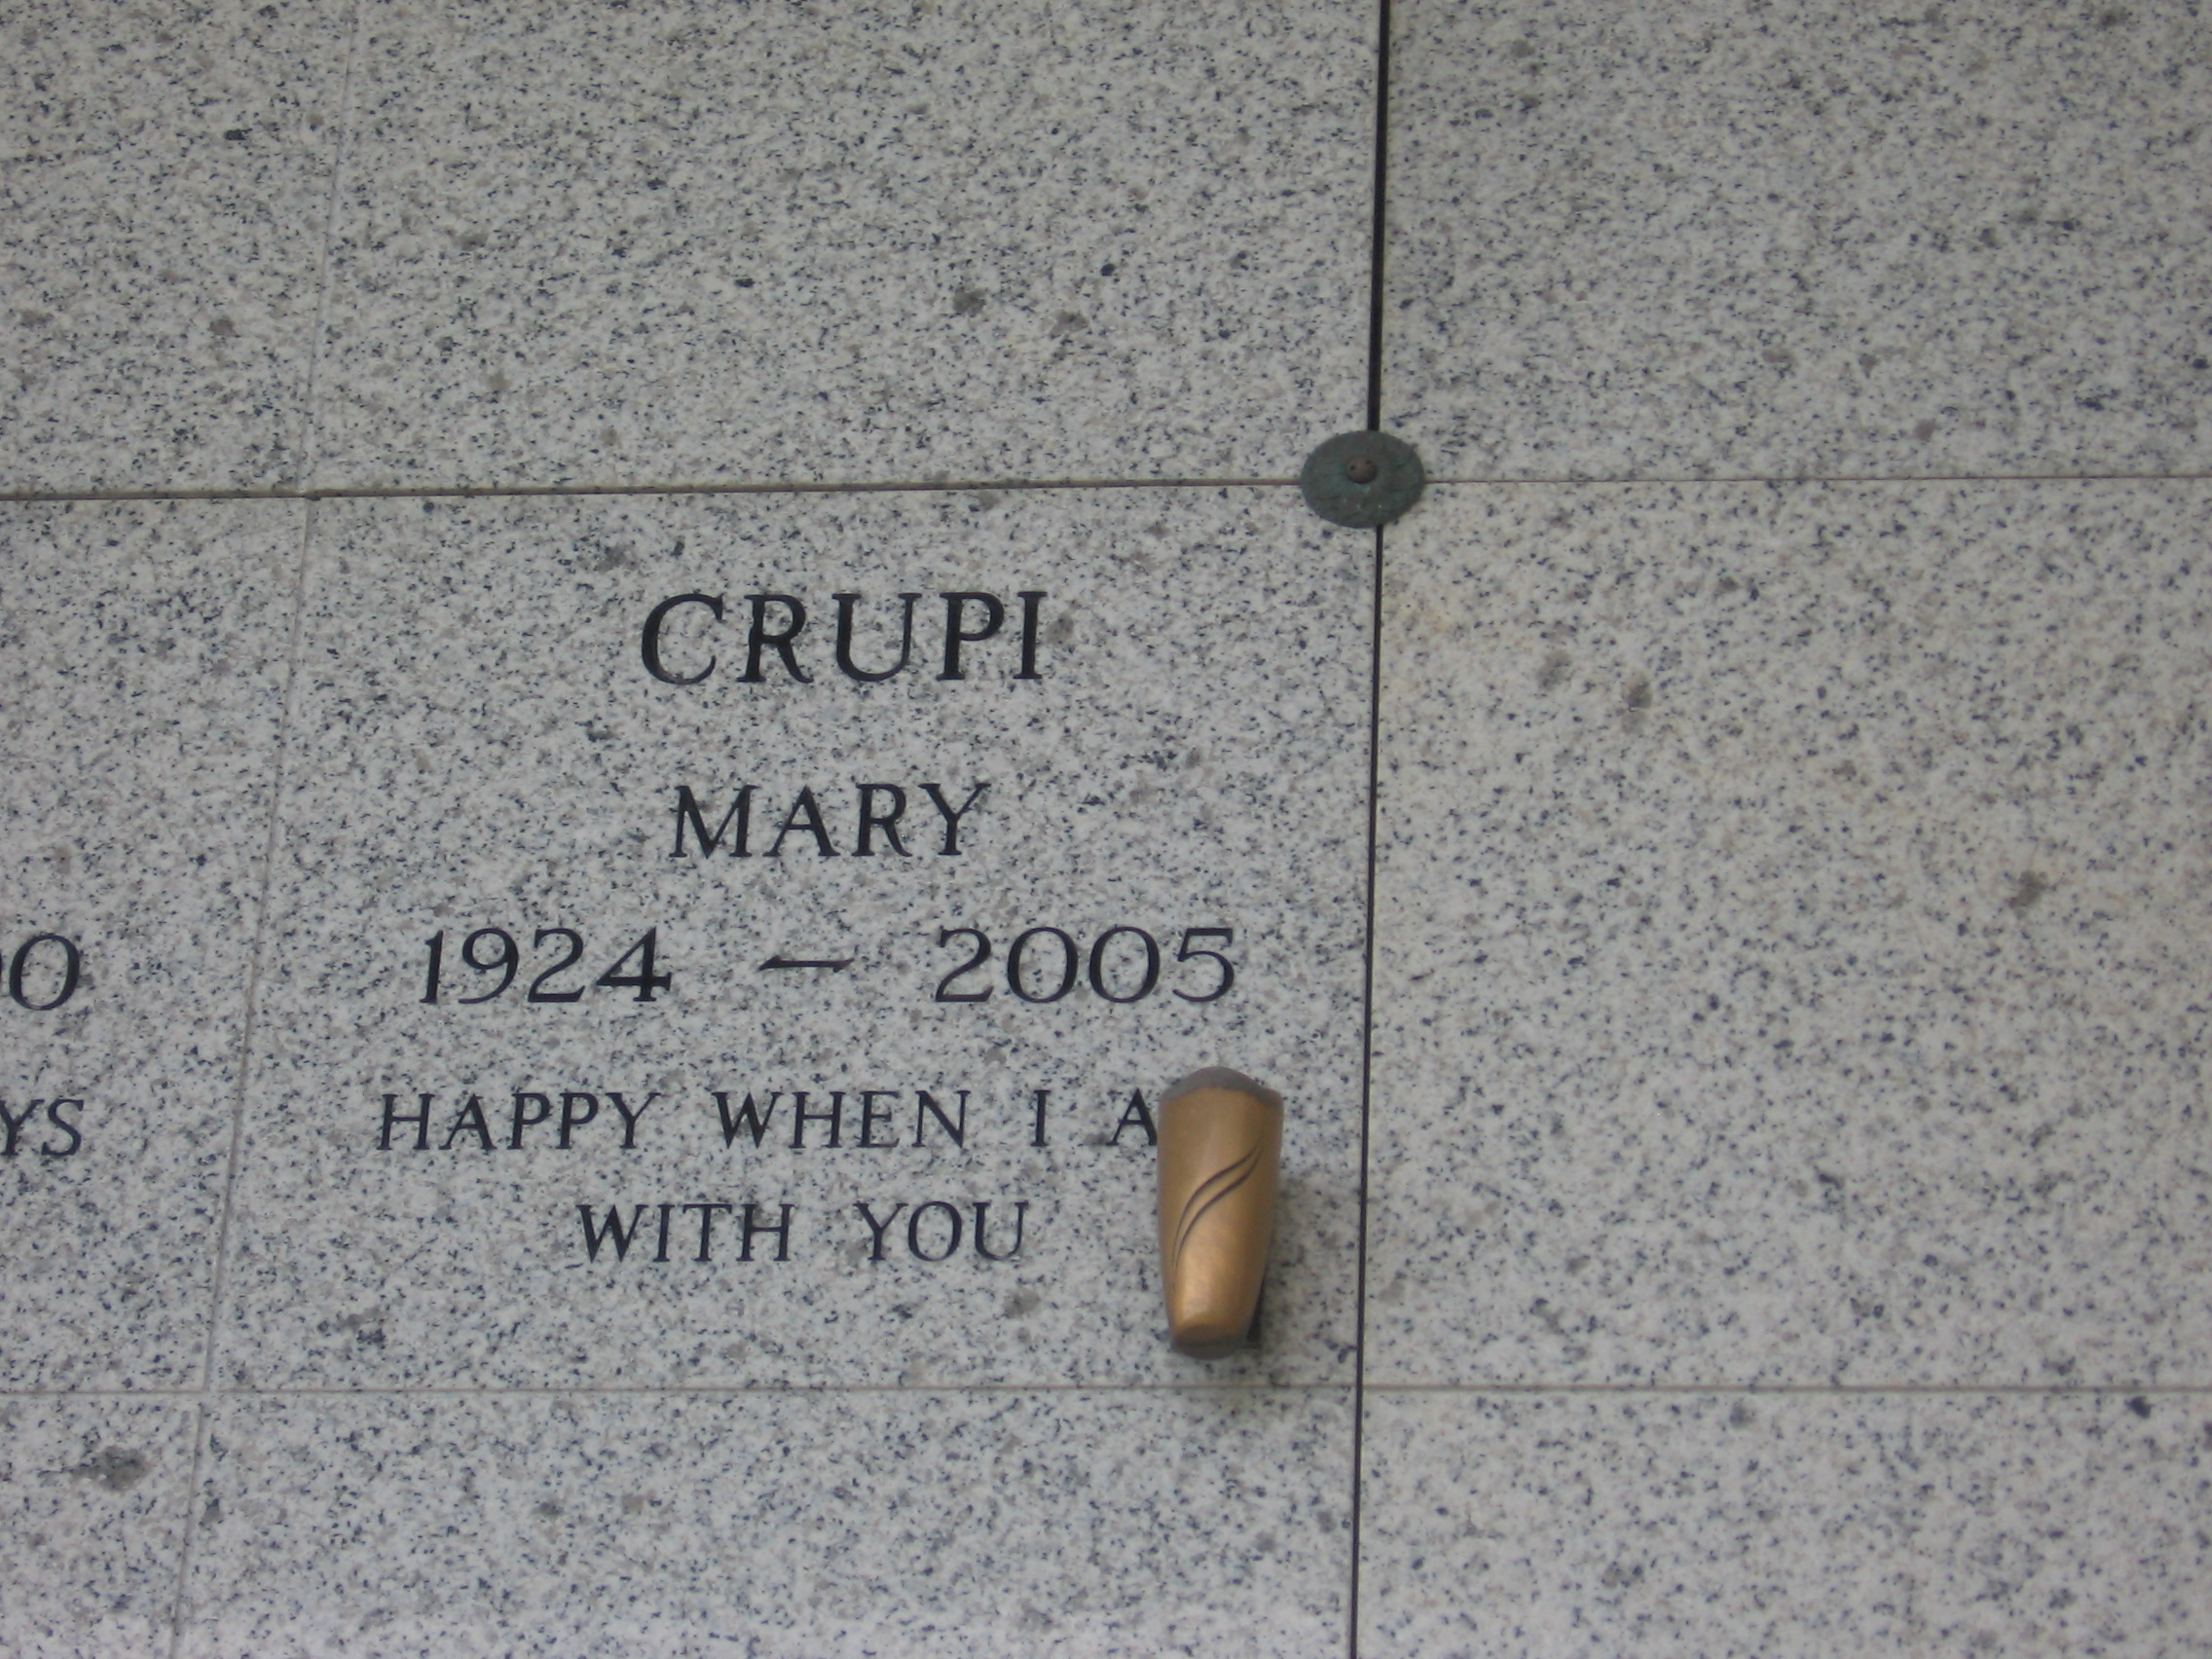 Mary Crupi